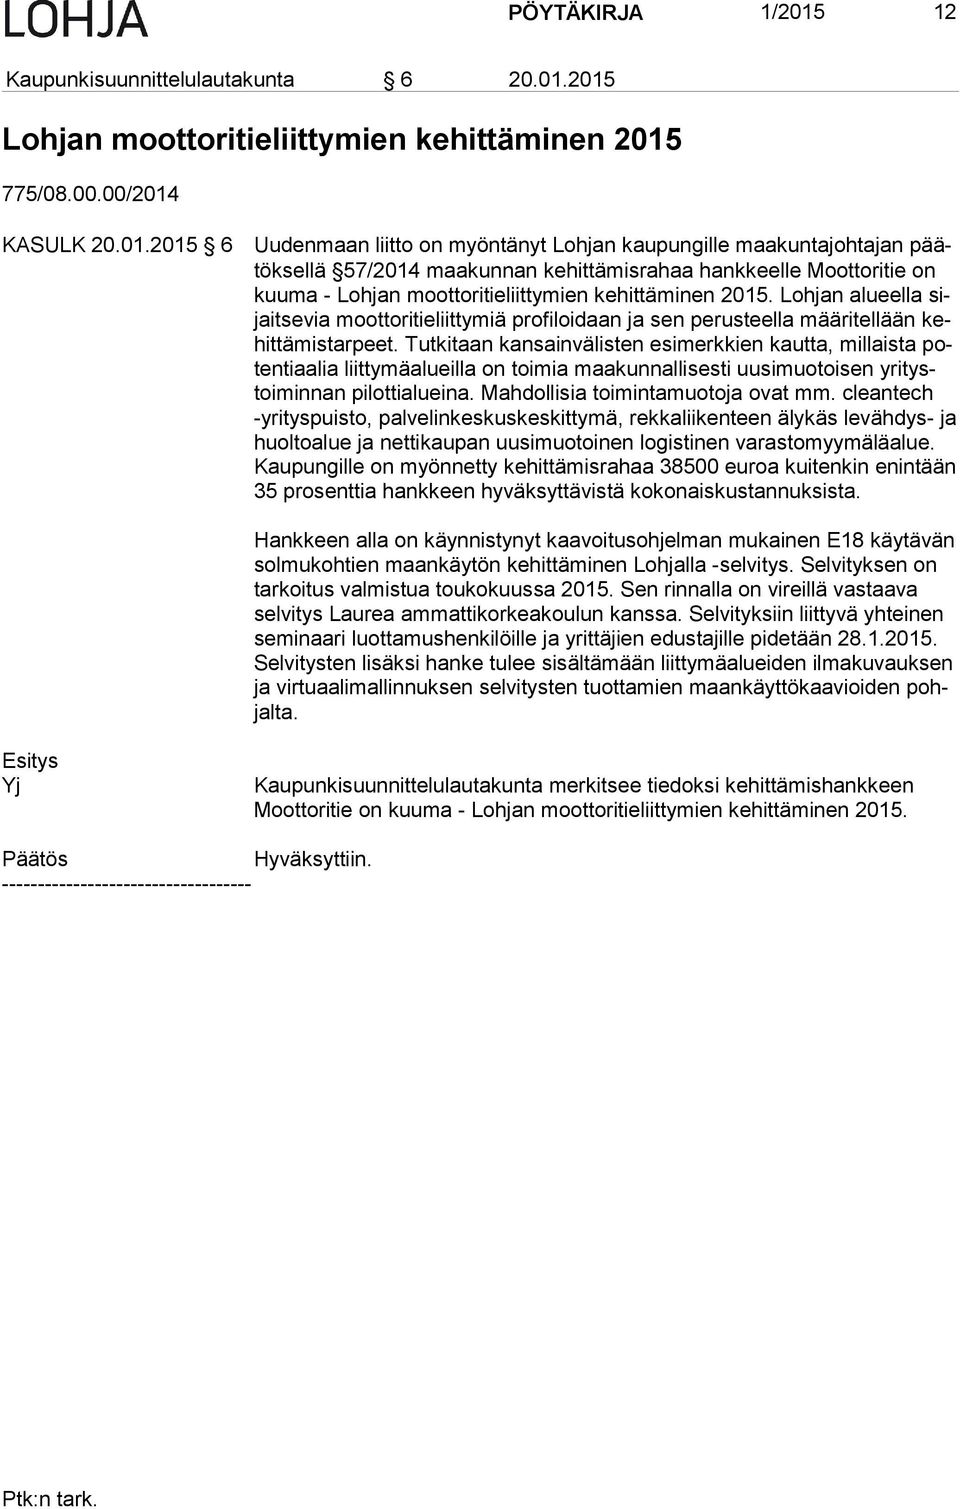 2015 Lohjan moottoritieliittymien kehittäminen 2015 775/08.00.00/2014 KASULK 20.01.2015 6 Uudenmaan liitto on myöntänyt Lohjan kaupungille maakuntajohtajan päätök sel lä 57/2014 maakunnan